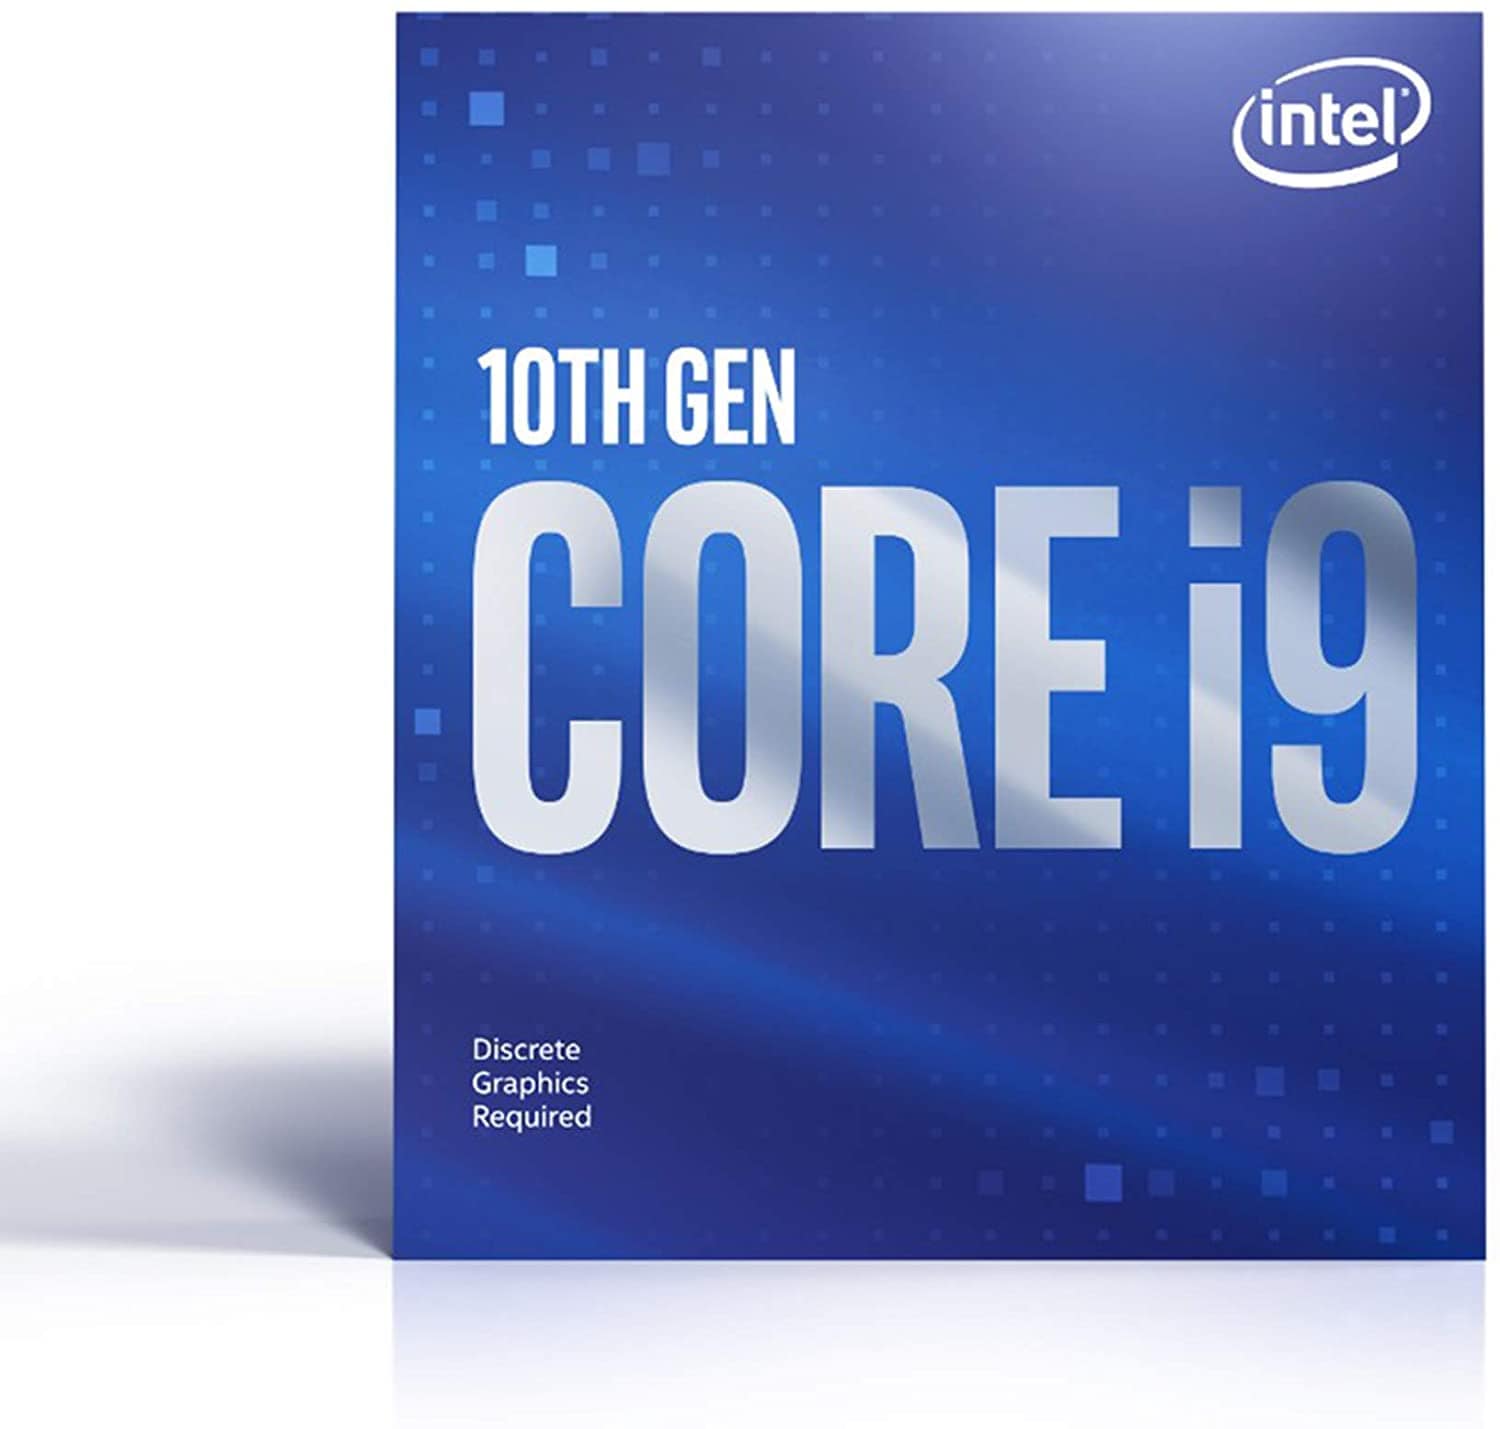 価格 Com Intel Cpu 年10月 人気売れ筋ランキング